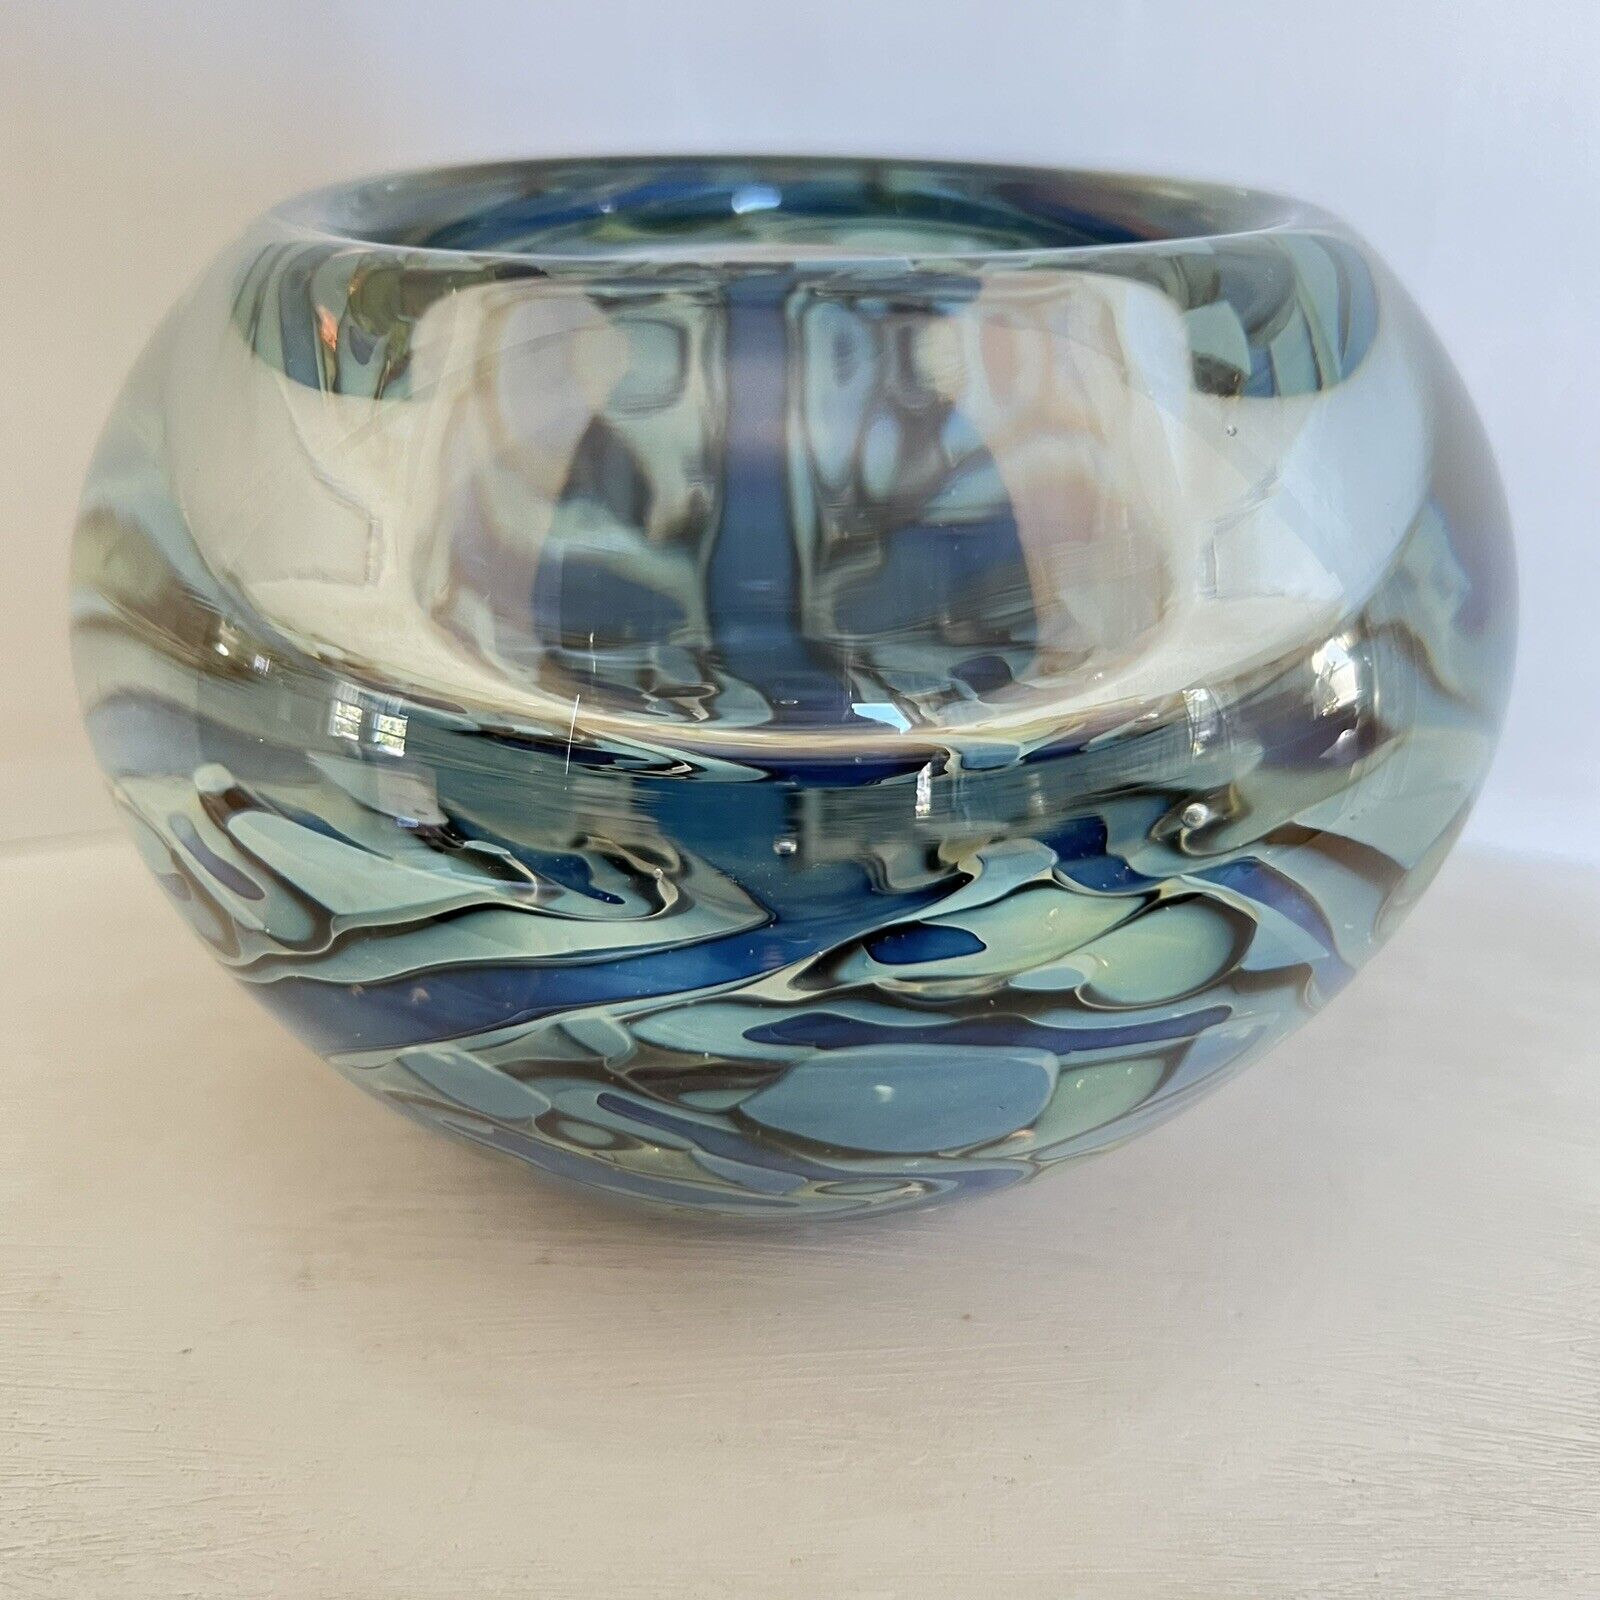 Robert Eickholt Art Handblown Glass Vase Signed Dated 2006 CVAS